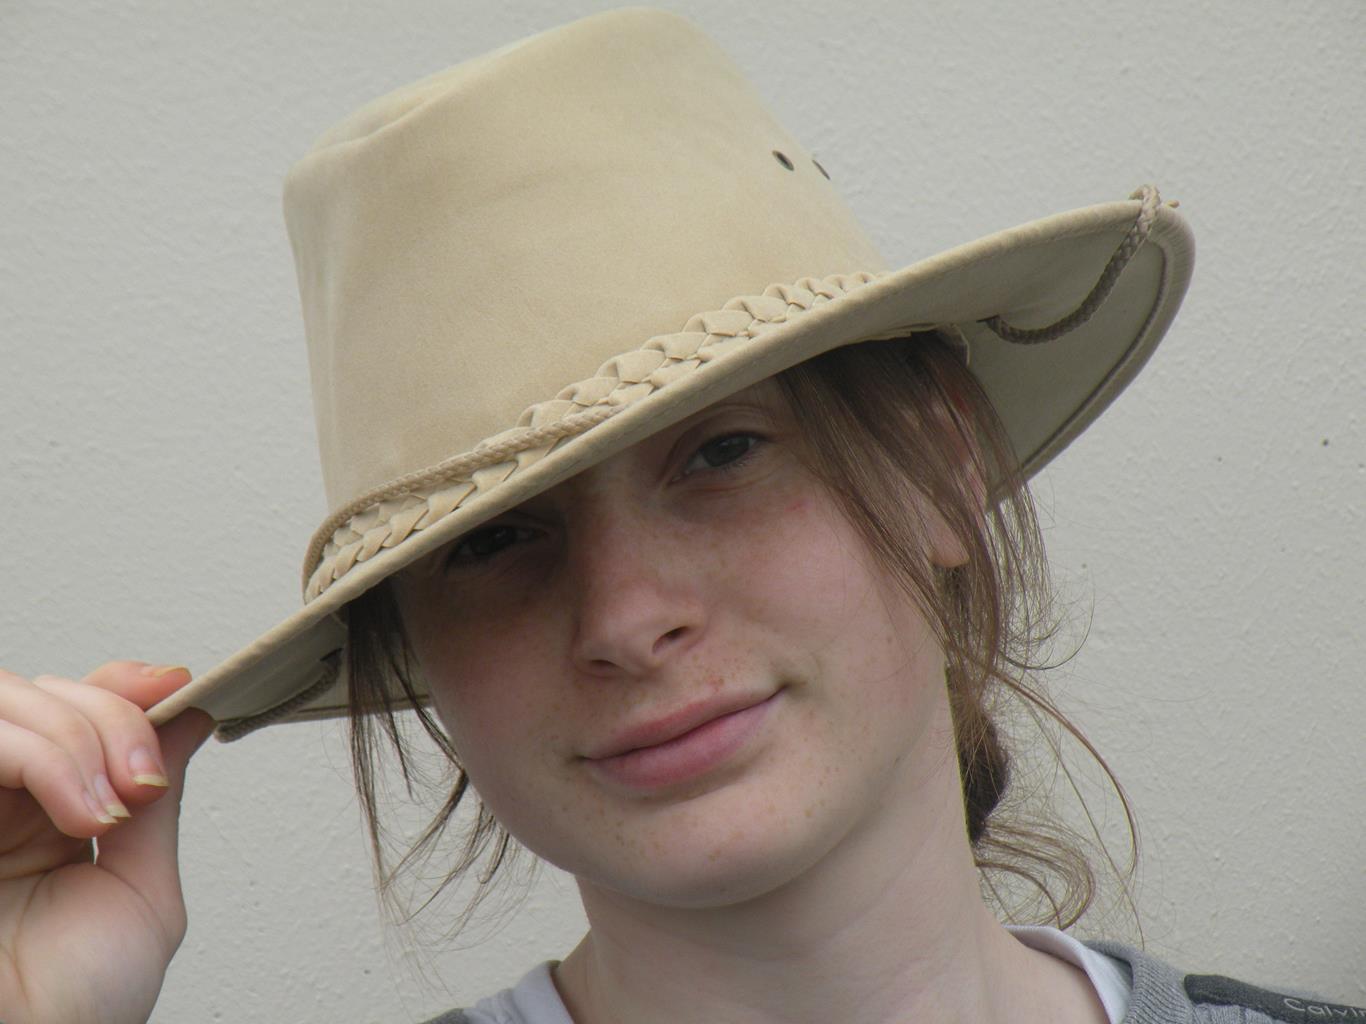 Parkes Soaka Hat